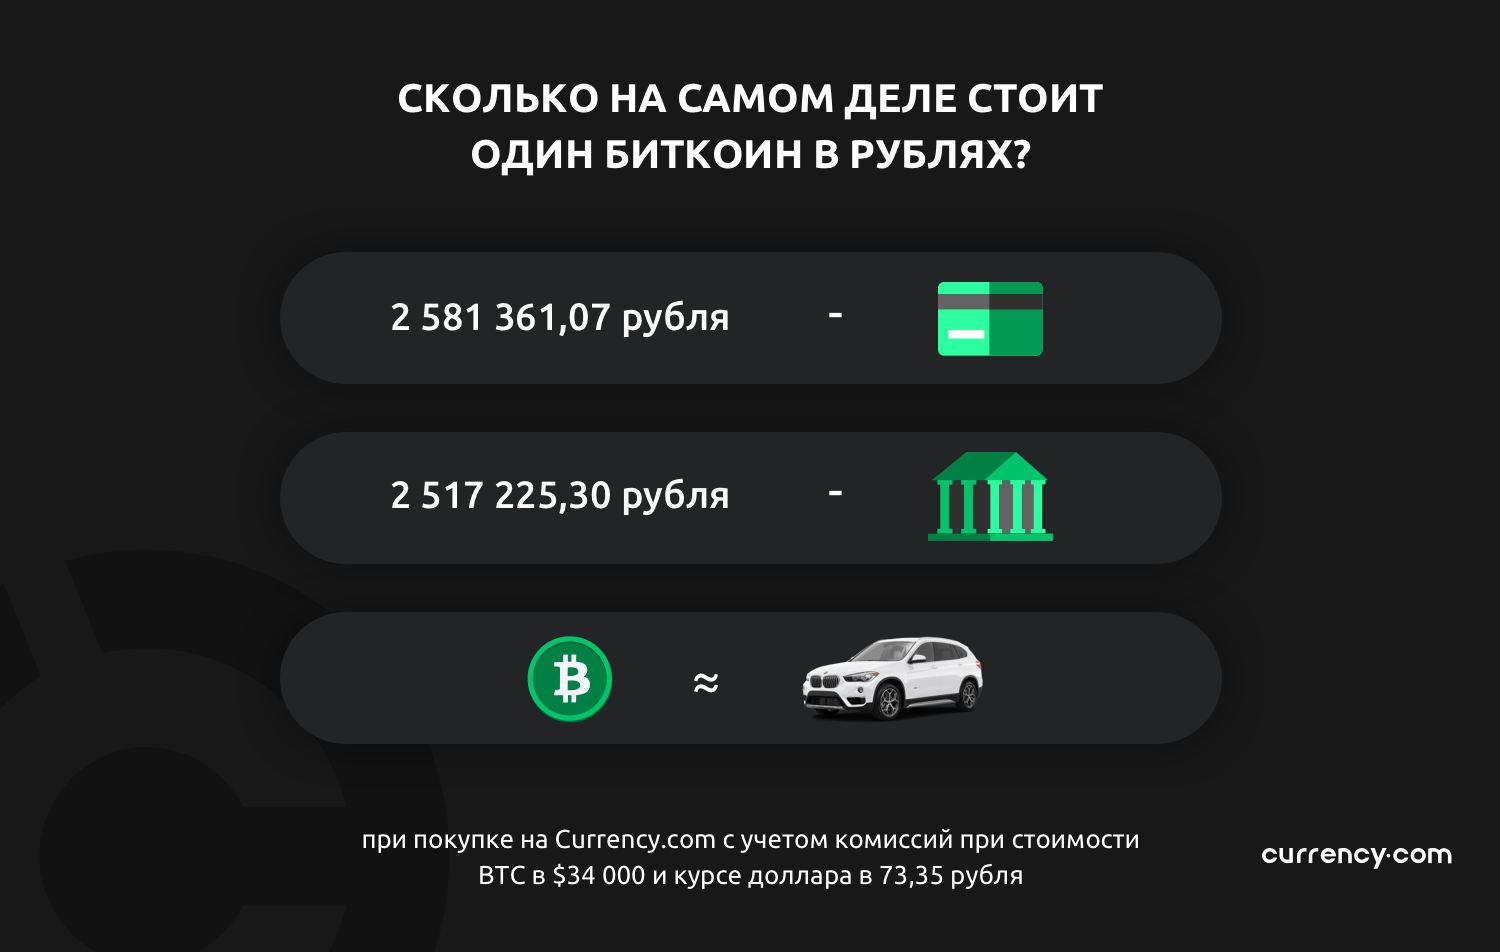 Цена одного биткоина в рублях 2021 курс рубля к гривне на сегодня в украине приватбанк